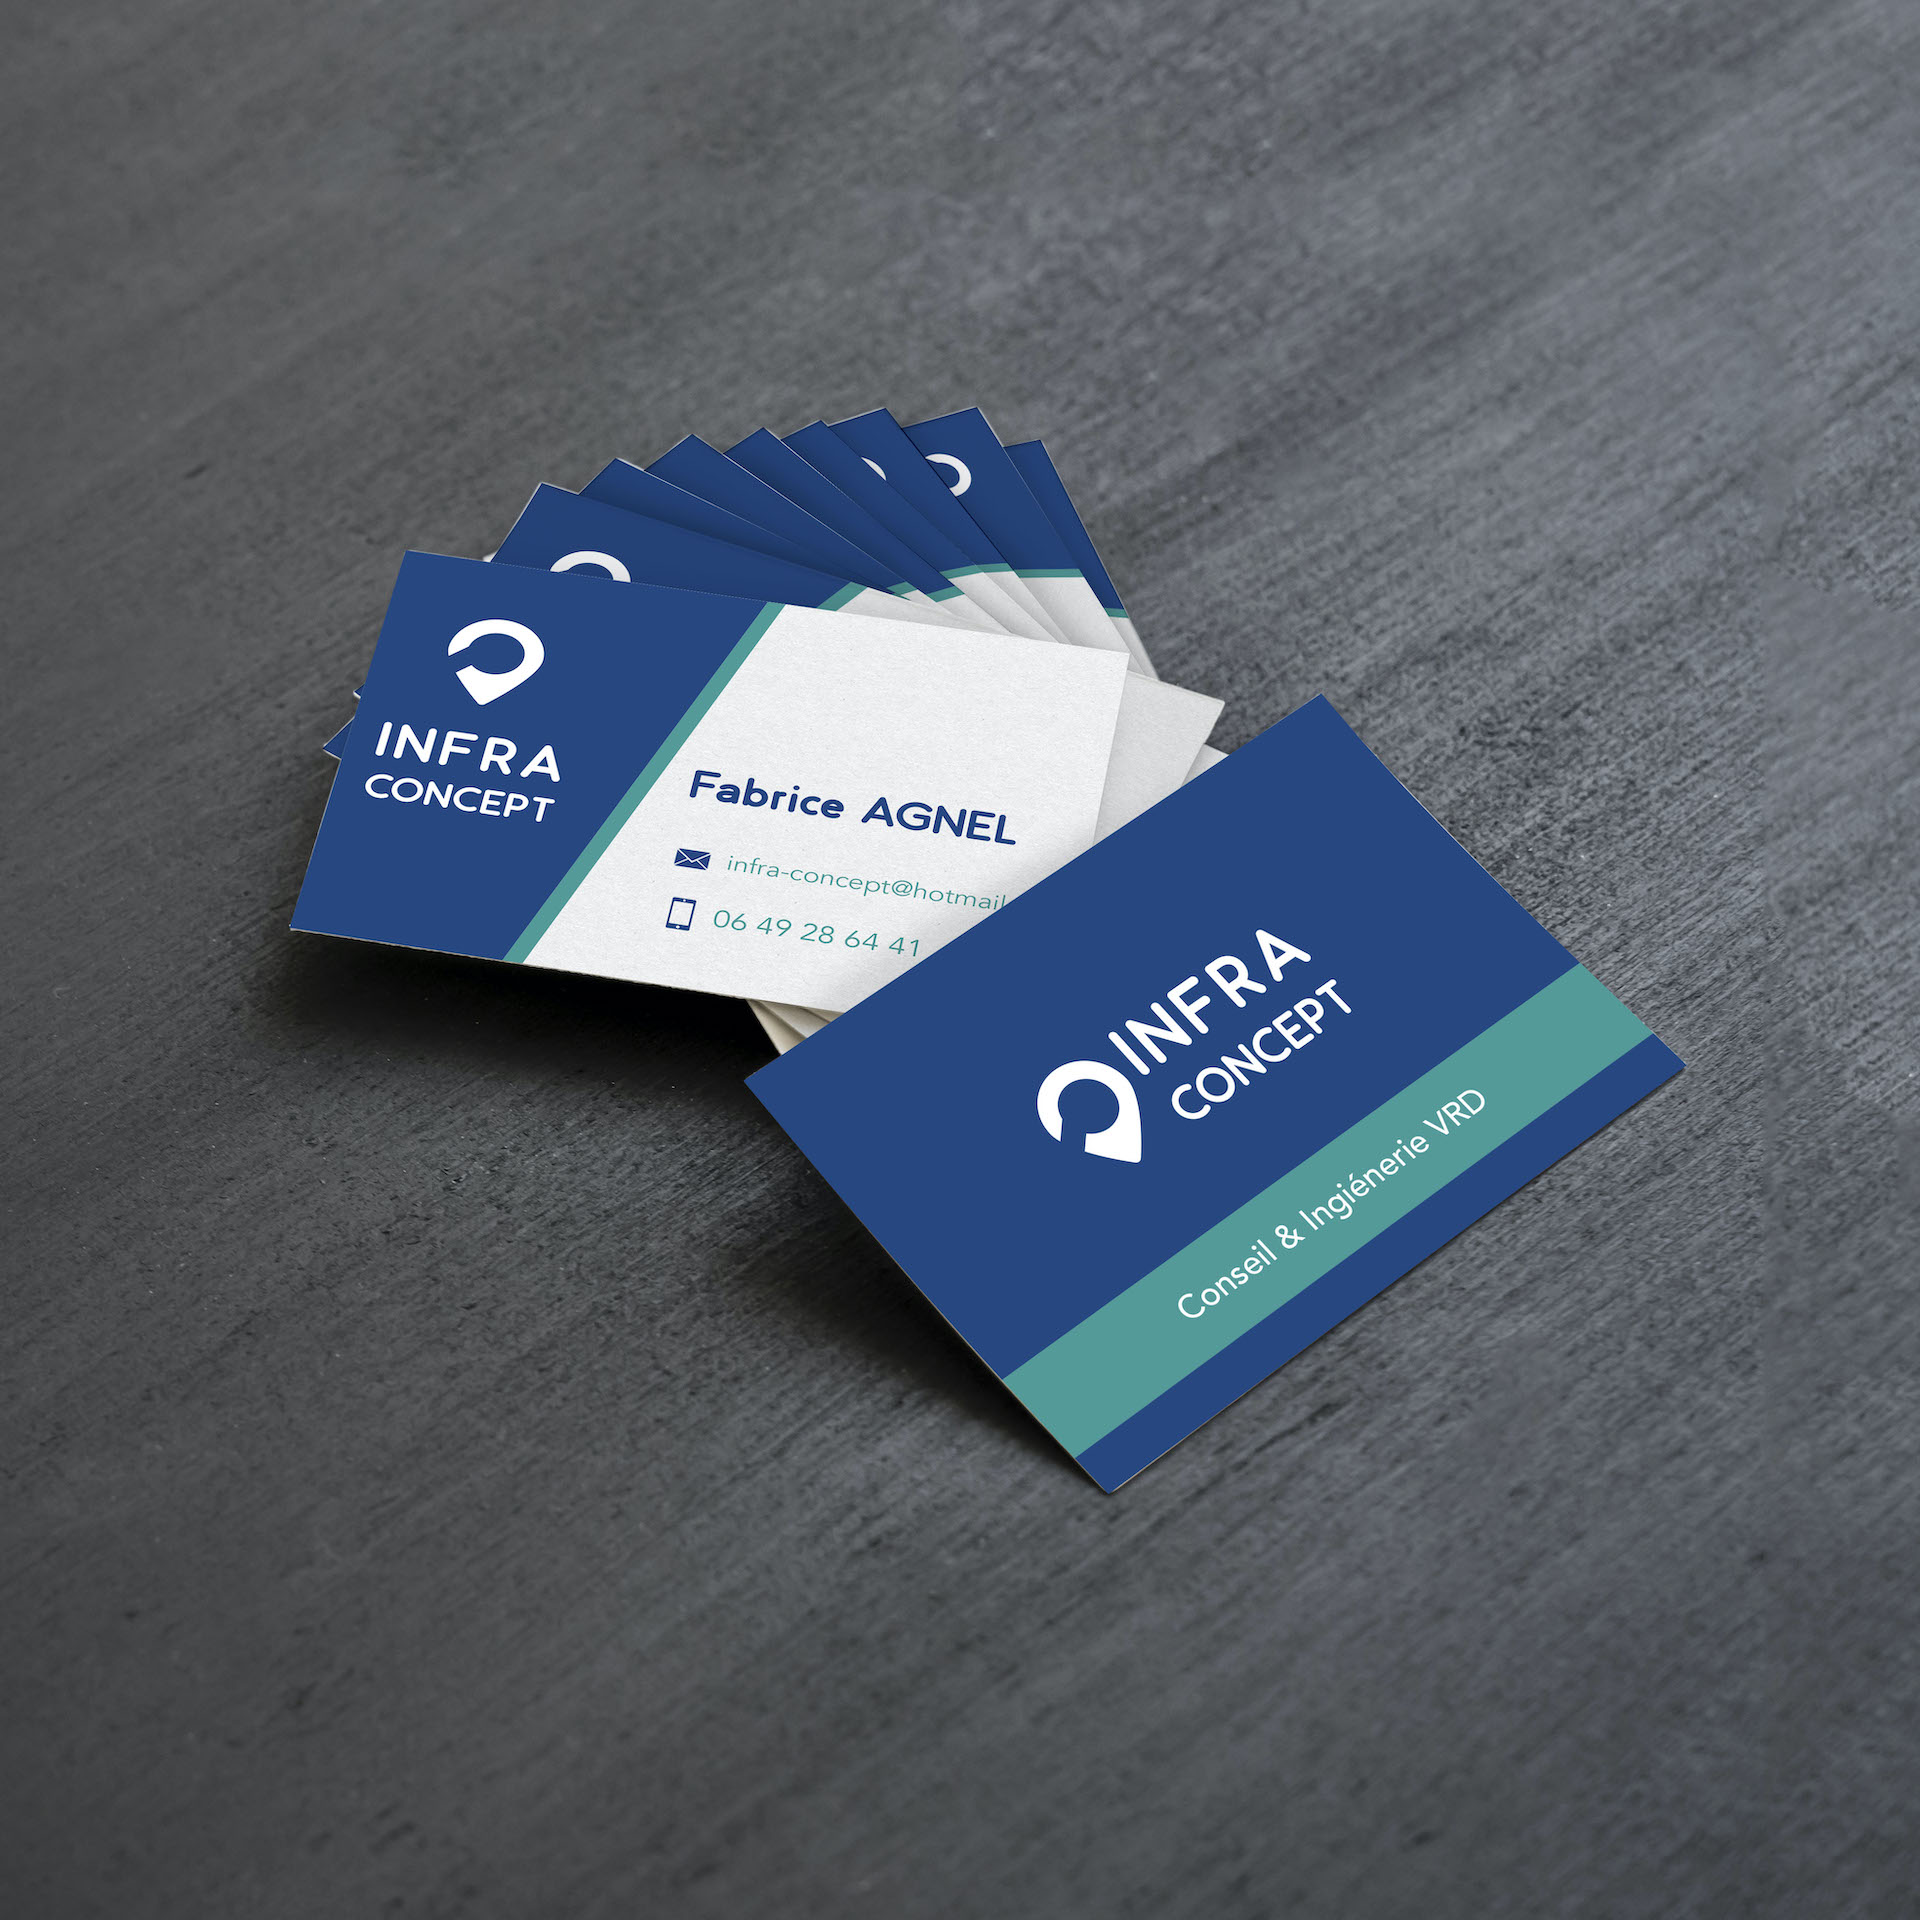 Tas de cartes de visites Infra Concept bleues, blanches et vertes posées sur une table